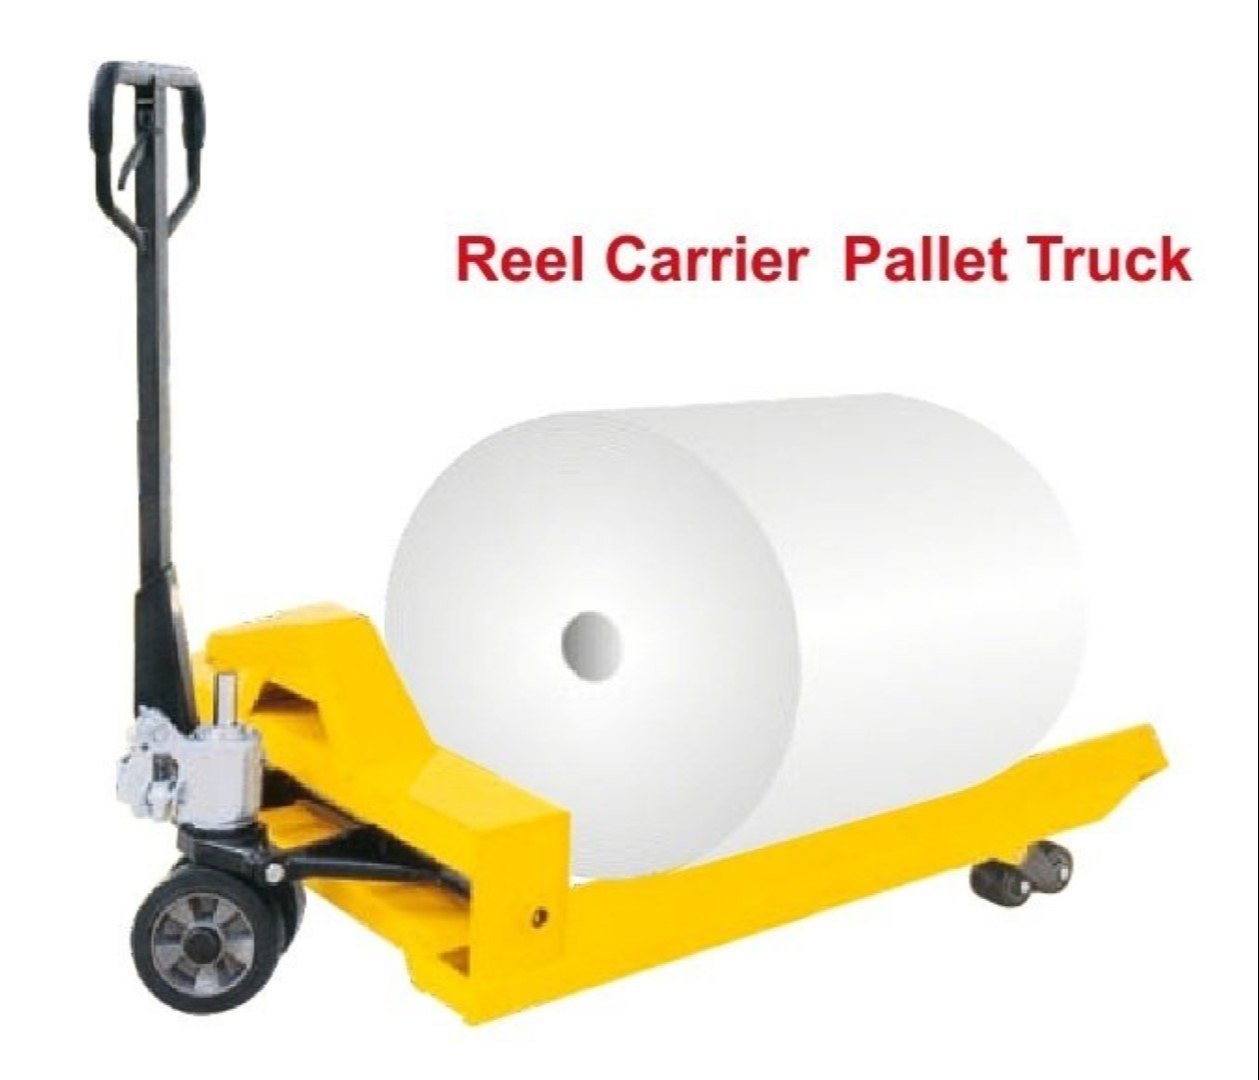 Reel Carrier Pallet Truck 2.jpg